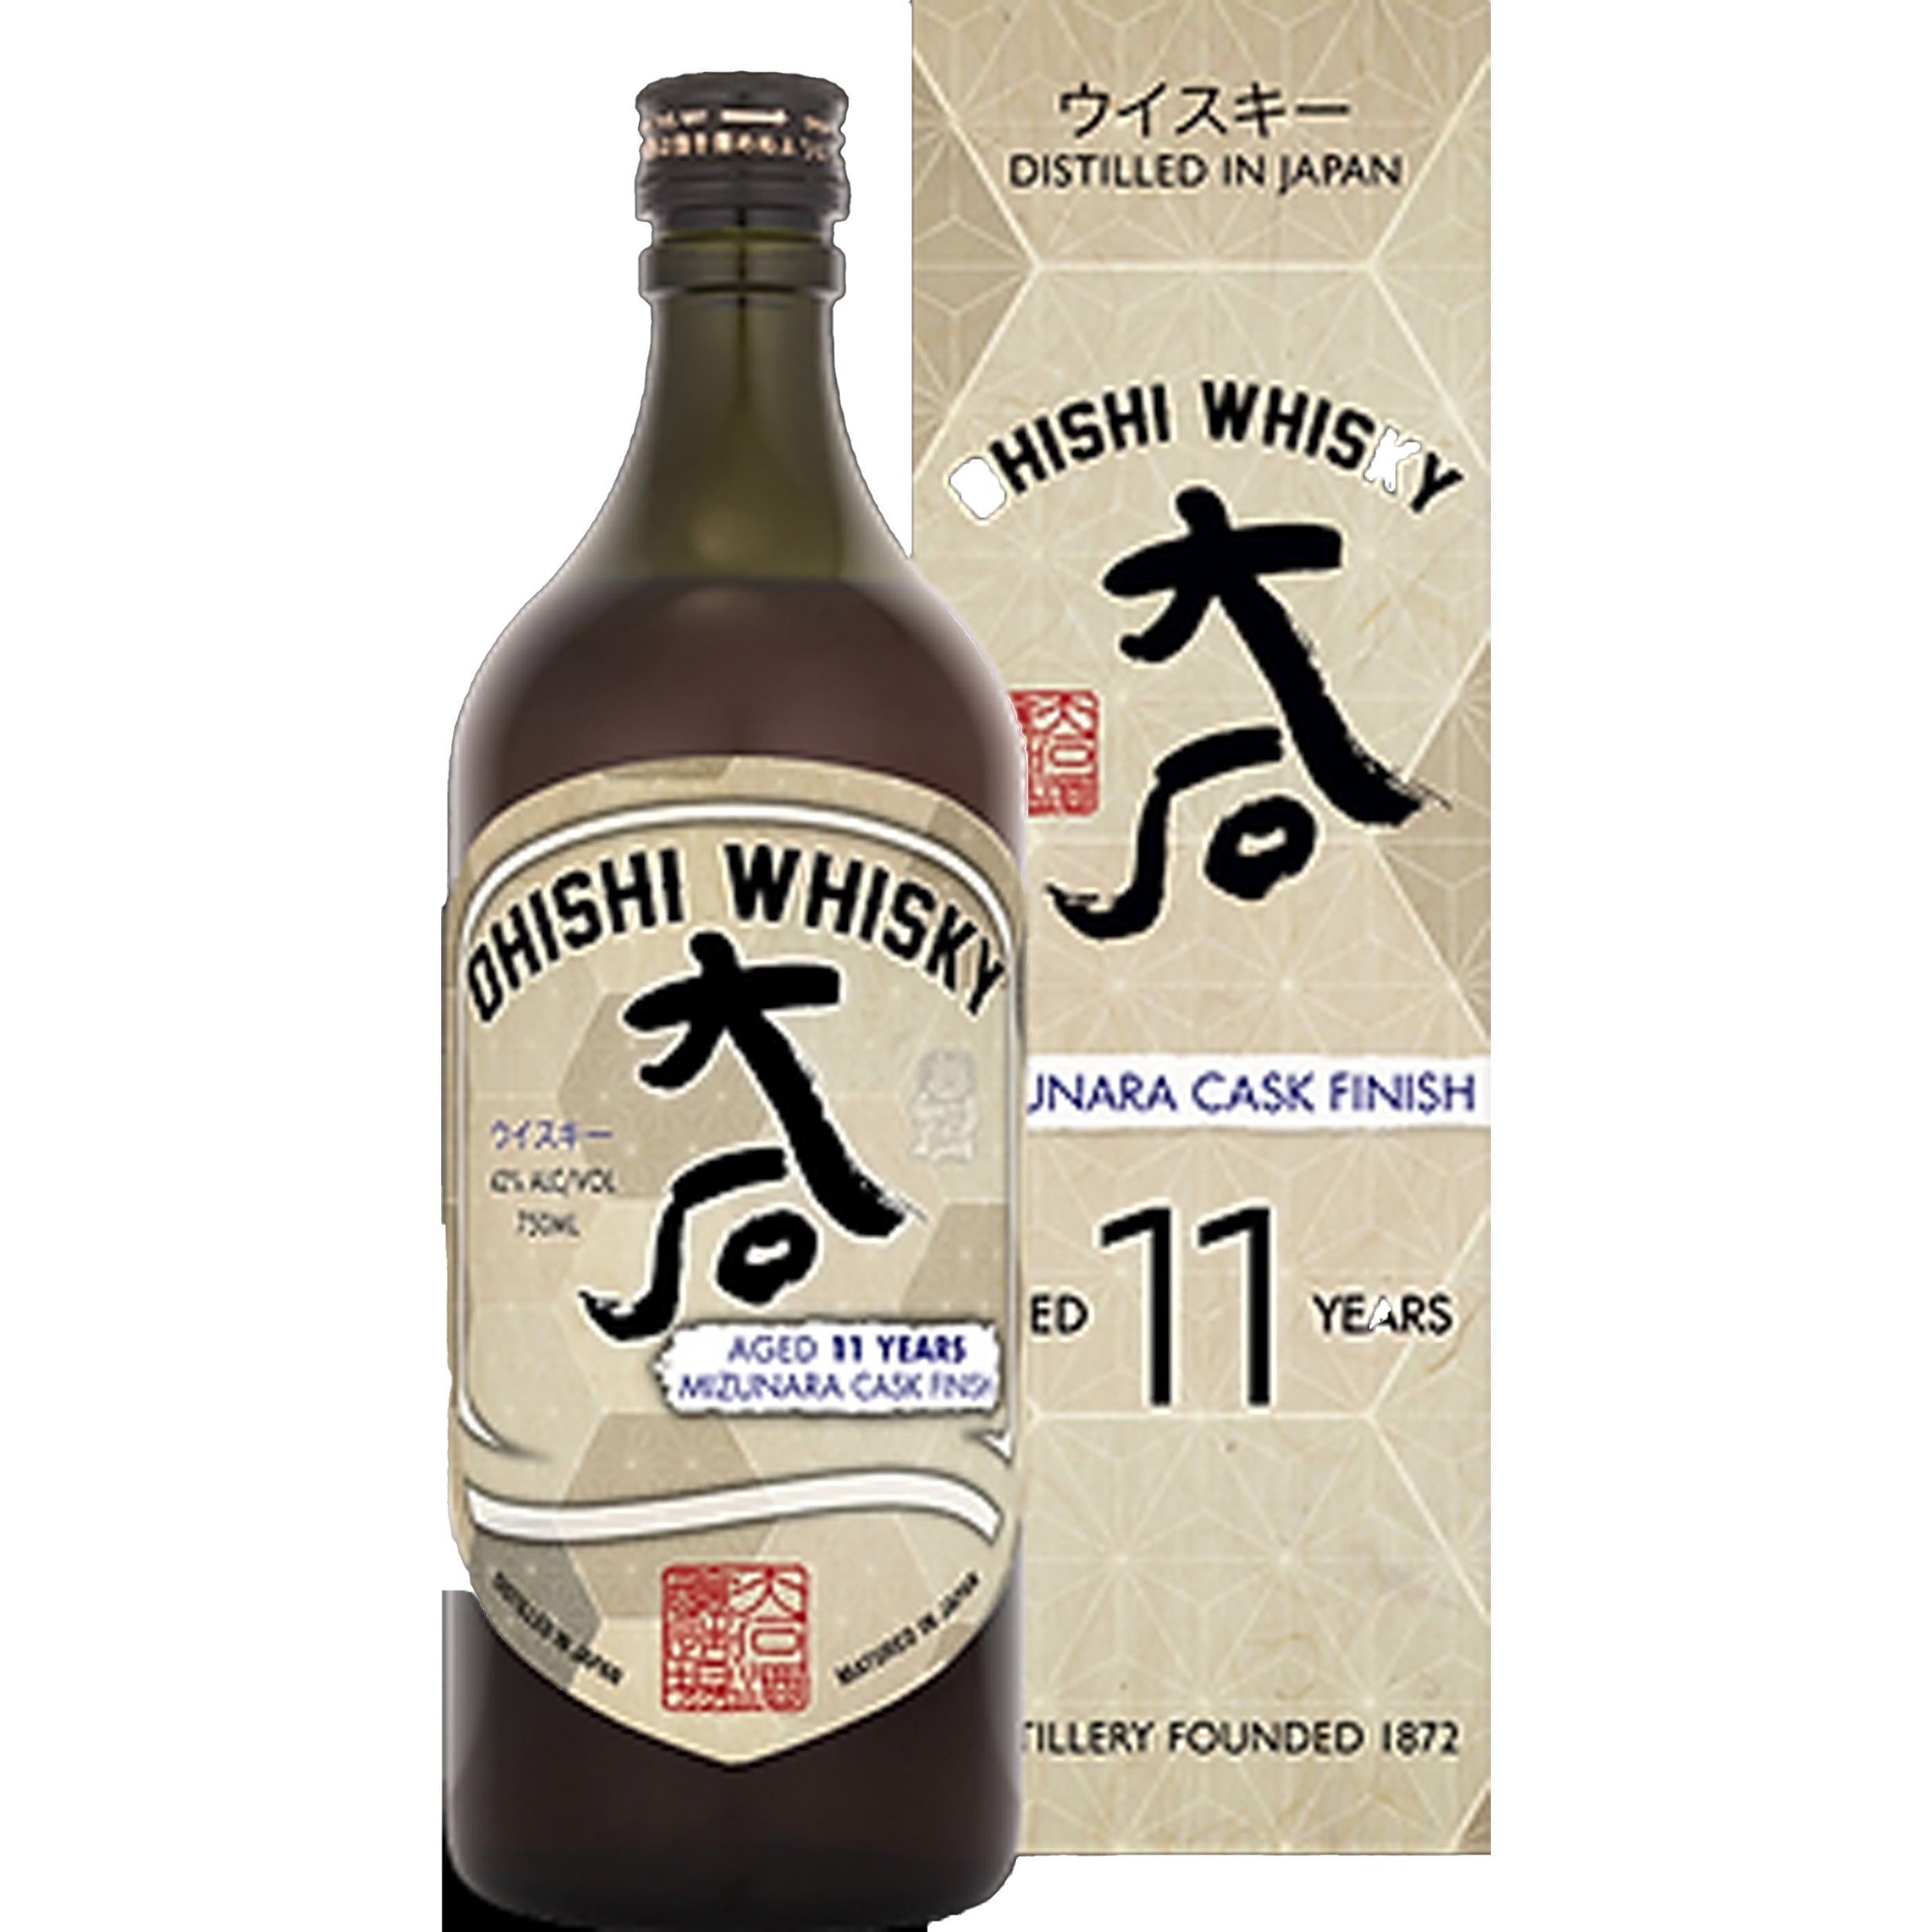 Ohishi 11 Year Old Mizunara Cask Finish Japanese Whisky